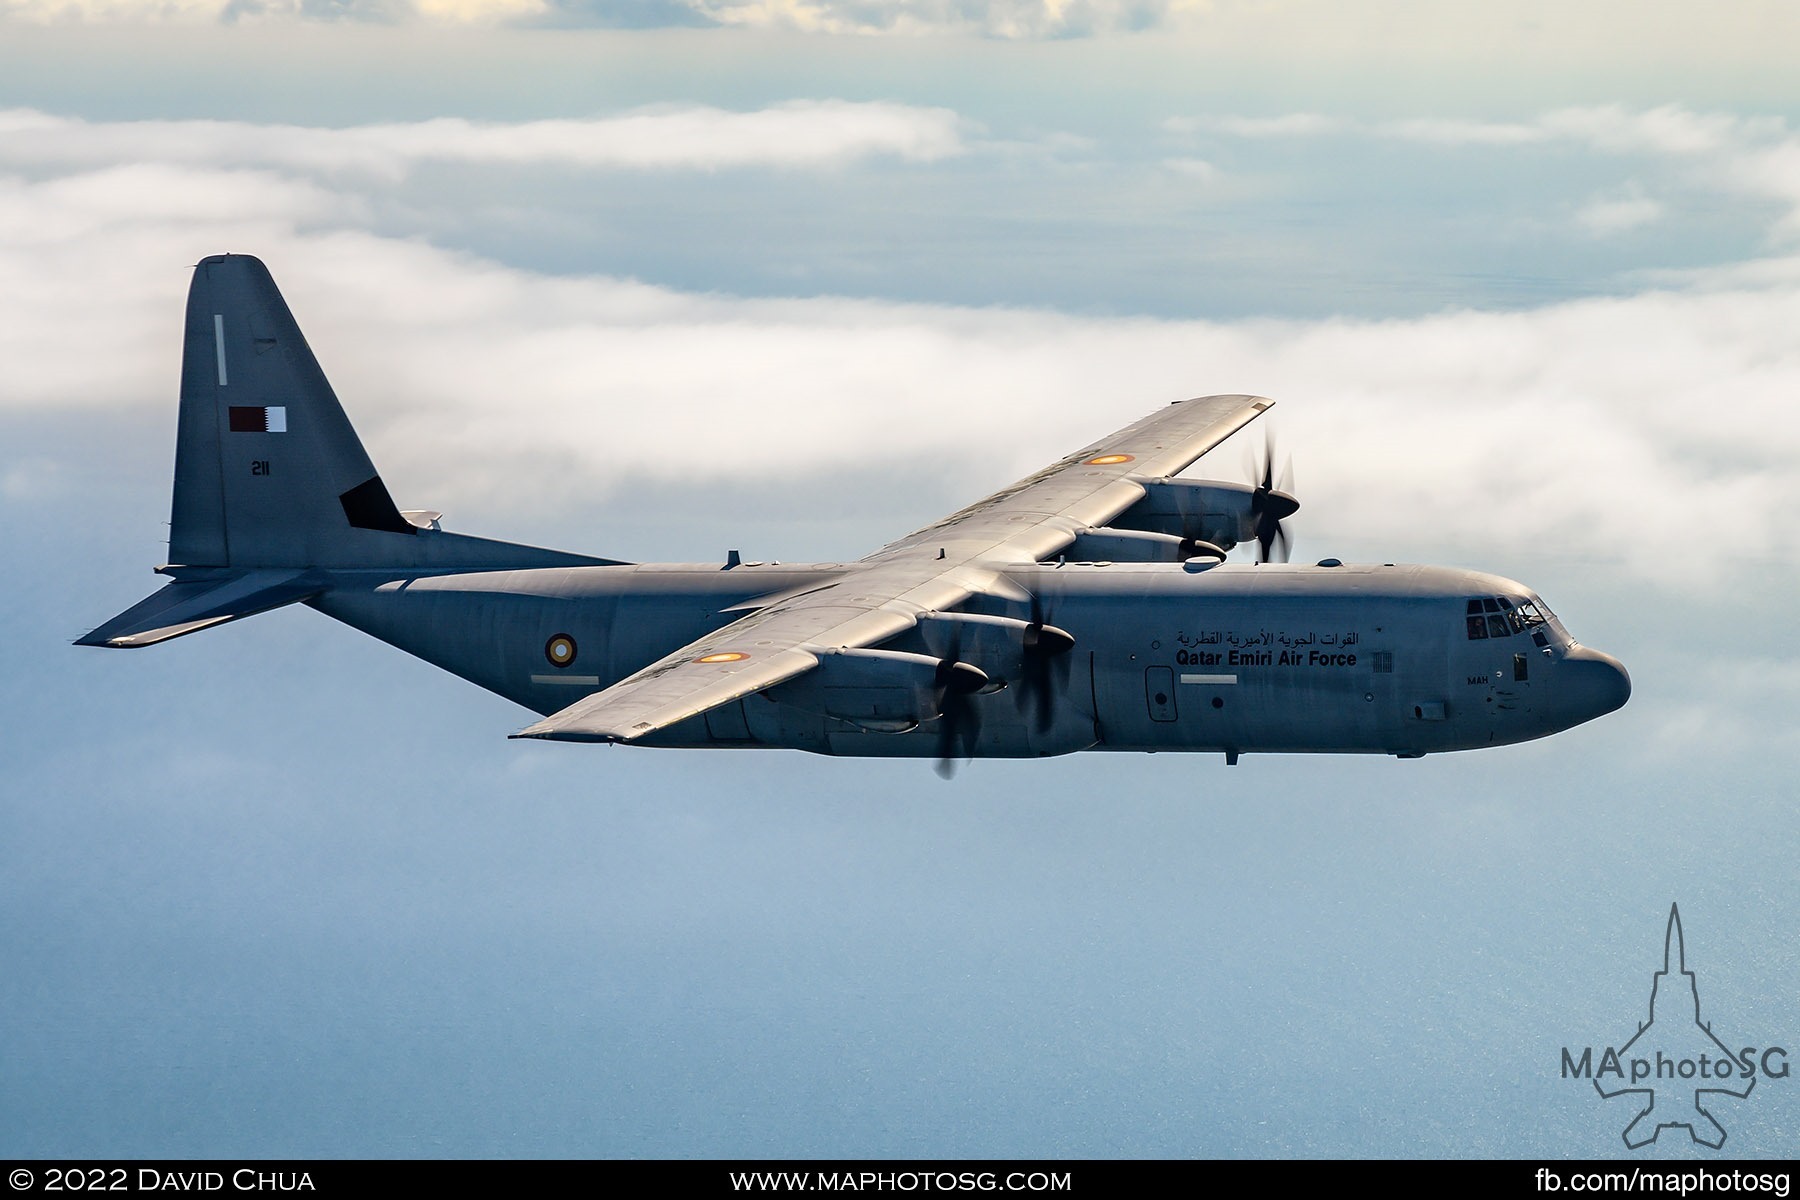 C-130J-30 Hercules from the Qatar Emiri Air Force